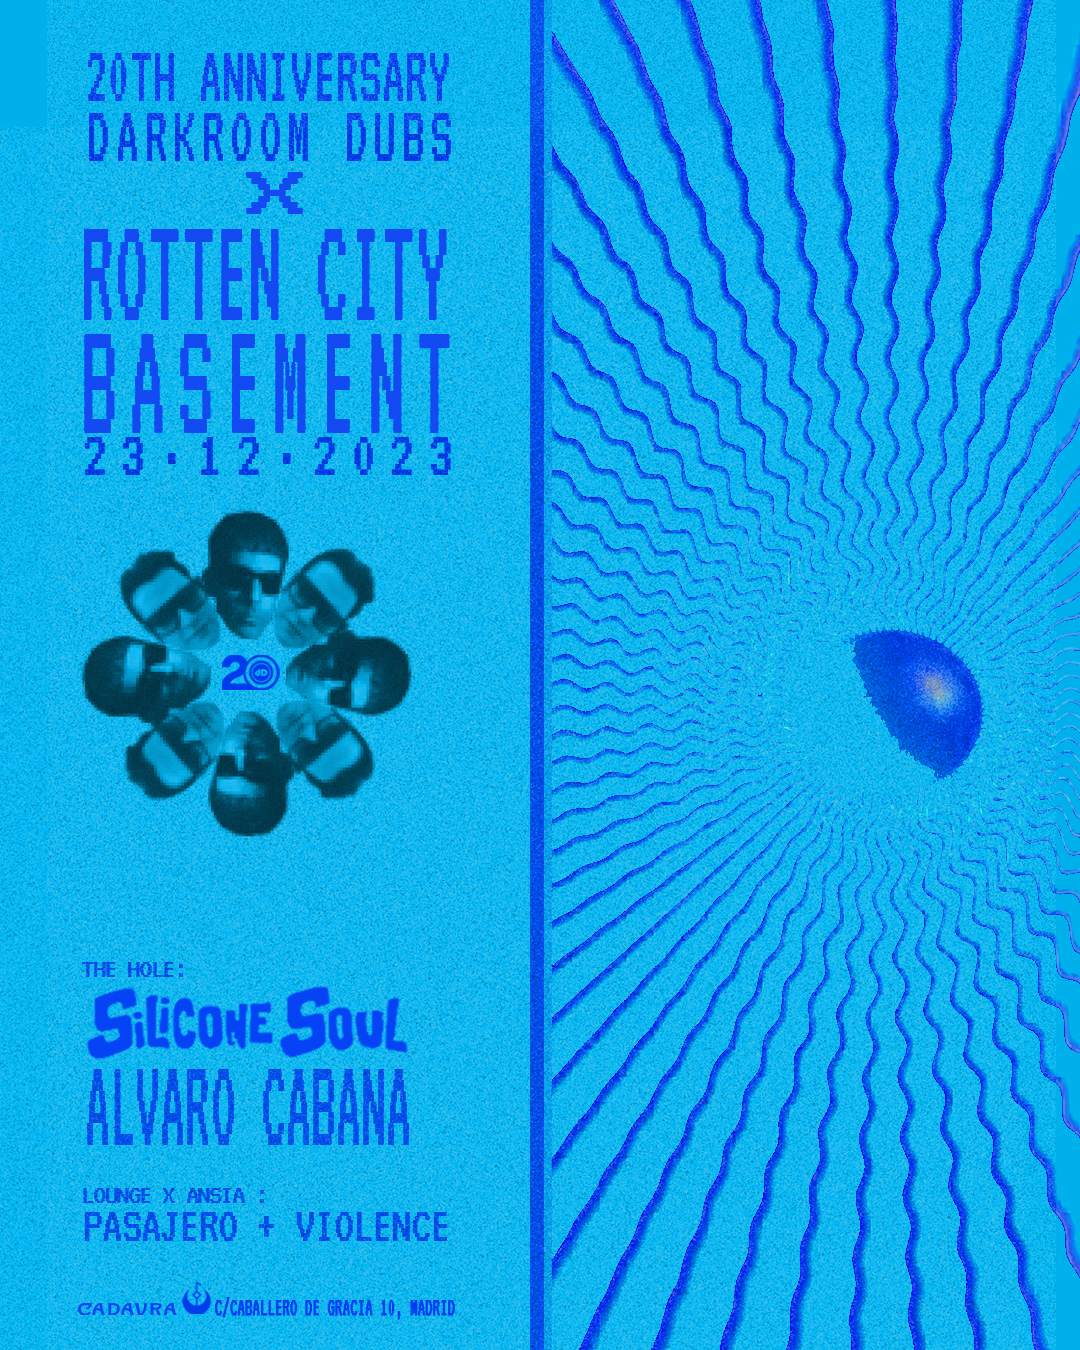 Rotten City Basement x 20 aniversario Darkroom Dubs - フライヤー表